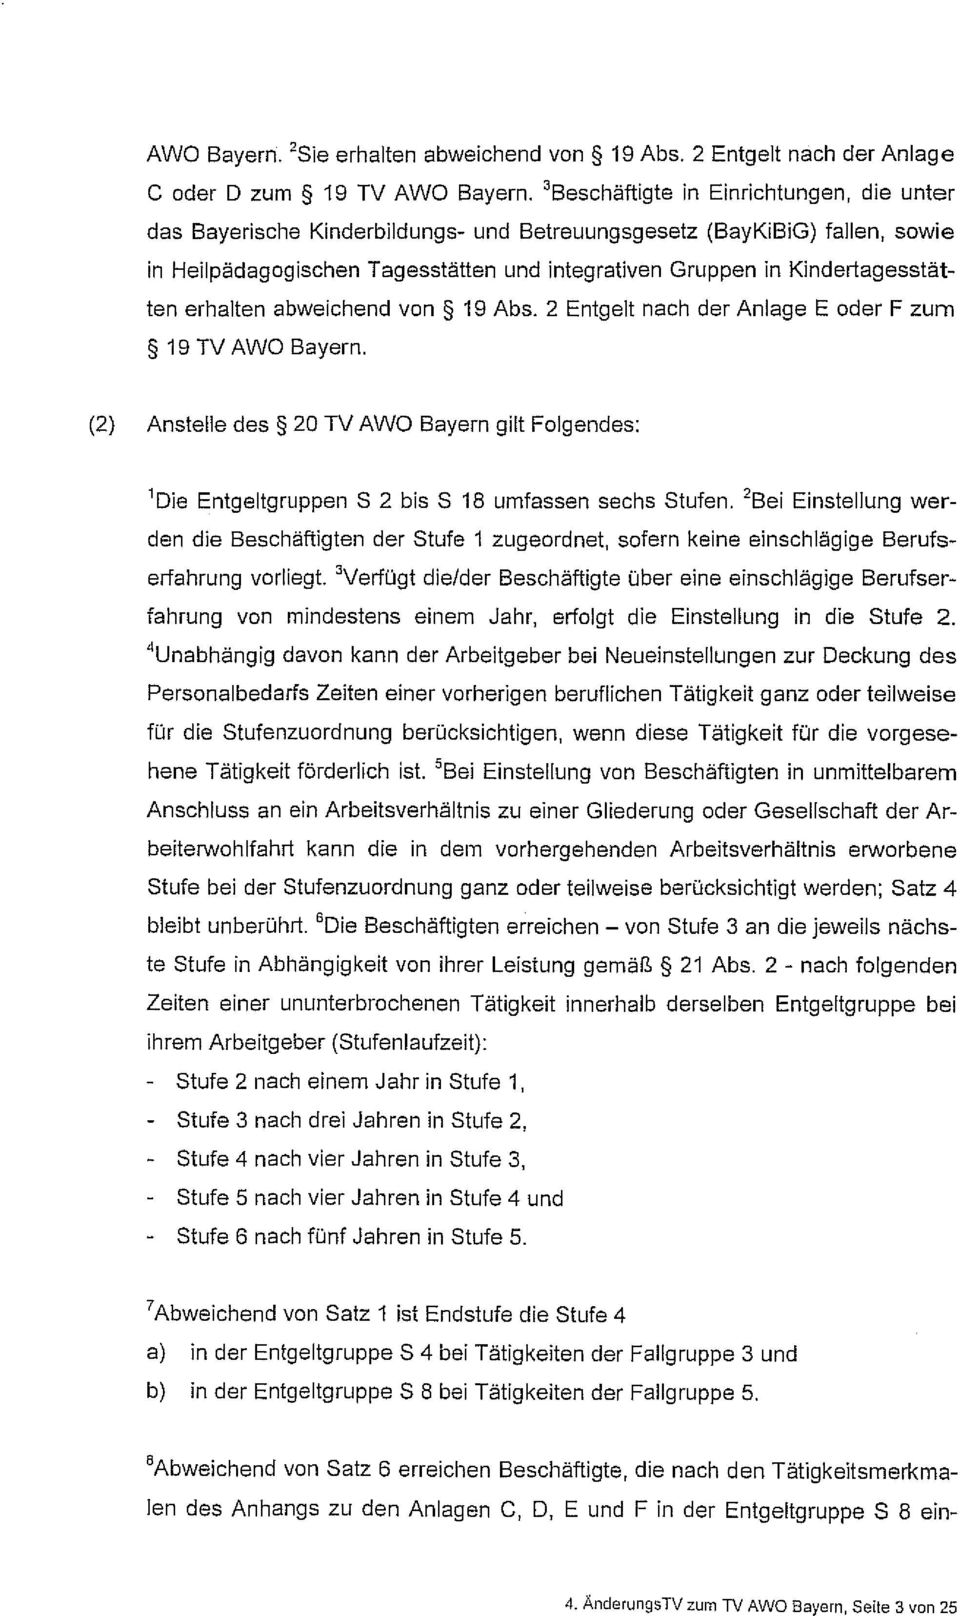 erhalten abweichend von 19 Abs. 2 Entgelt nach der Anlage E oder F zum 19 TV AWO Bayern. (2) Anstelle des 20 TV AWO Bayern gilt Folgendes: 'Die Entgeltgruppen S 2 bis S 18 umfassen sechs Stufen.